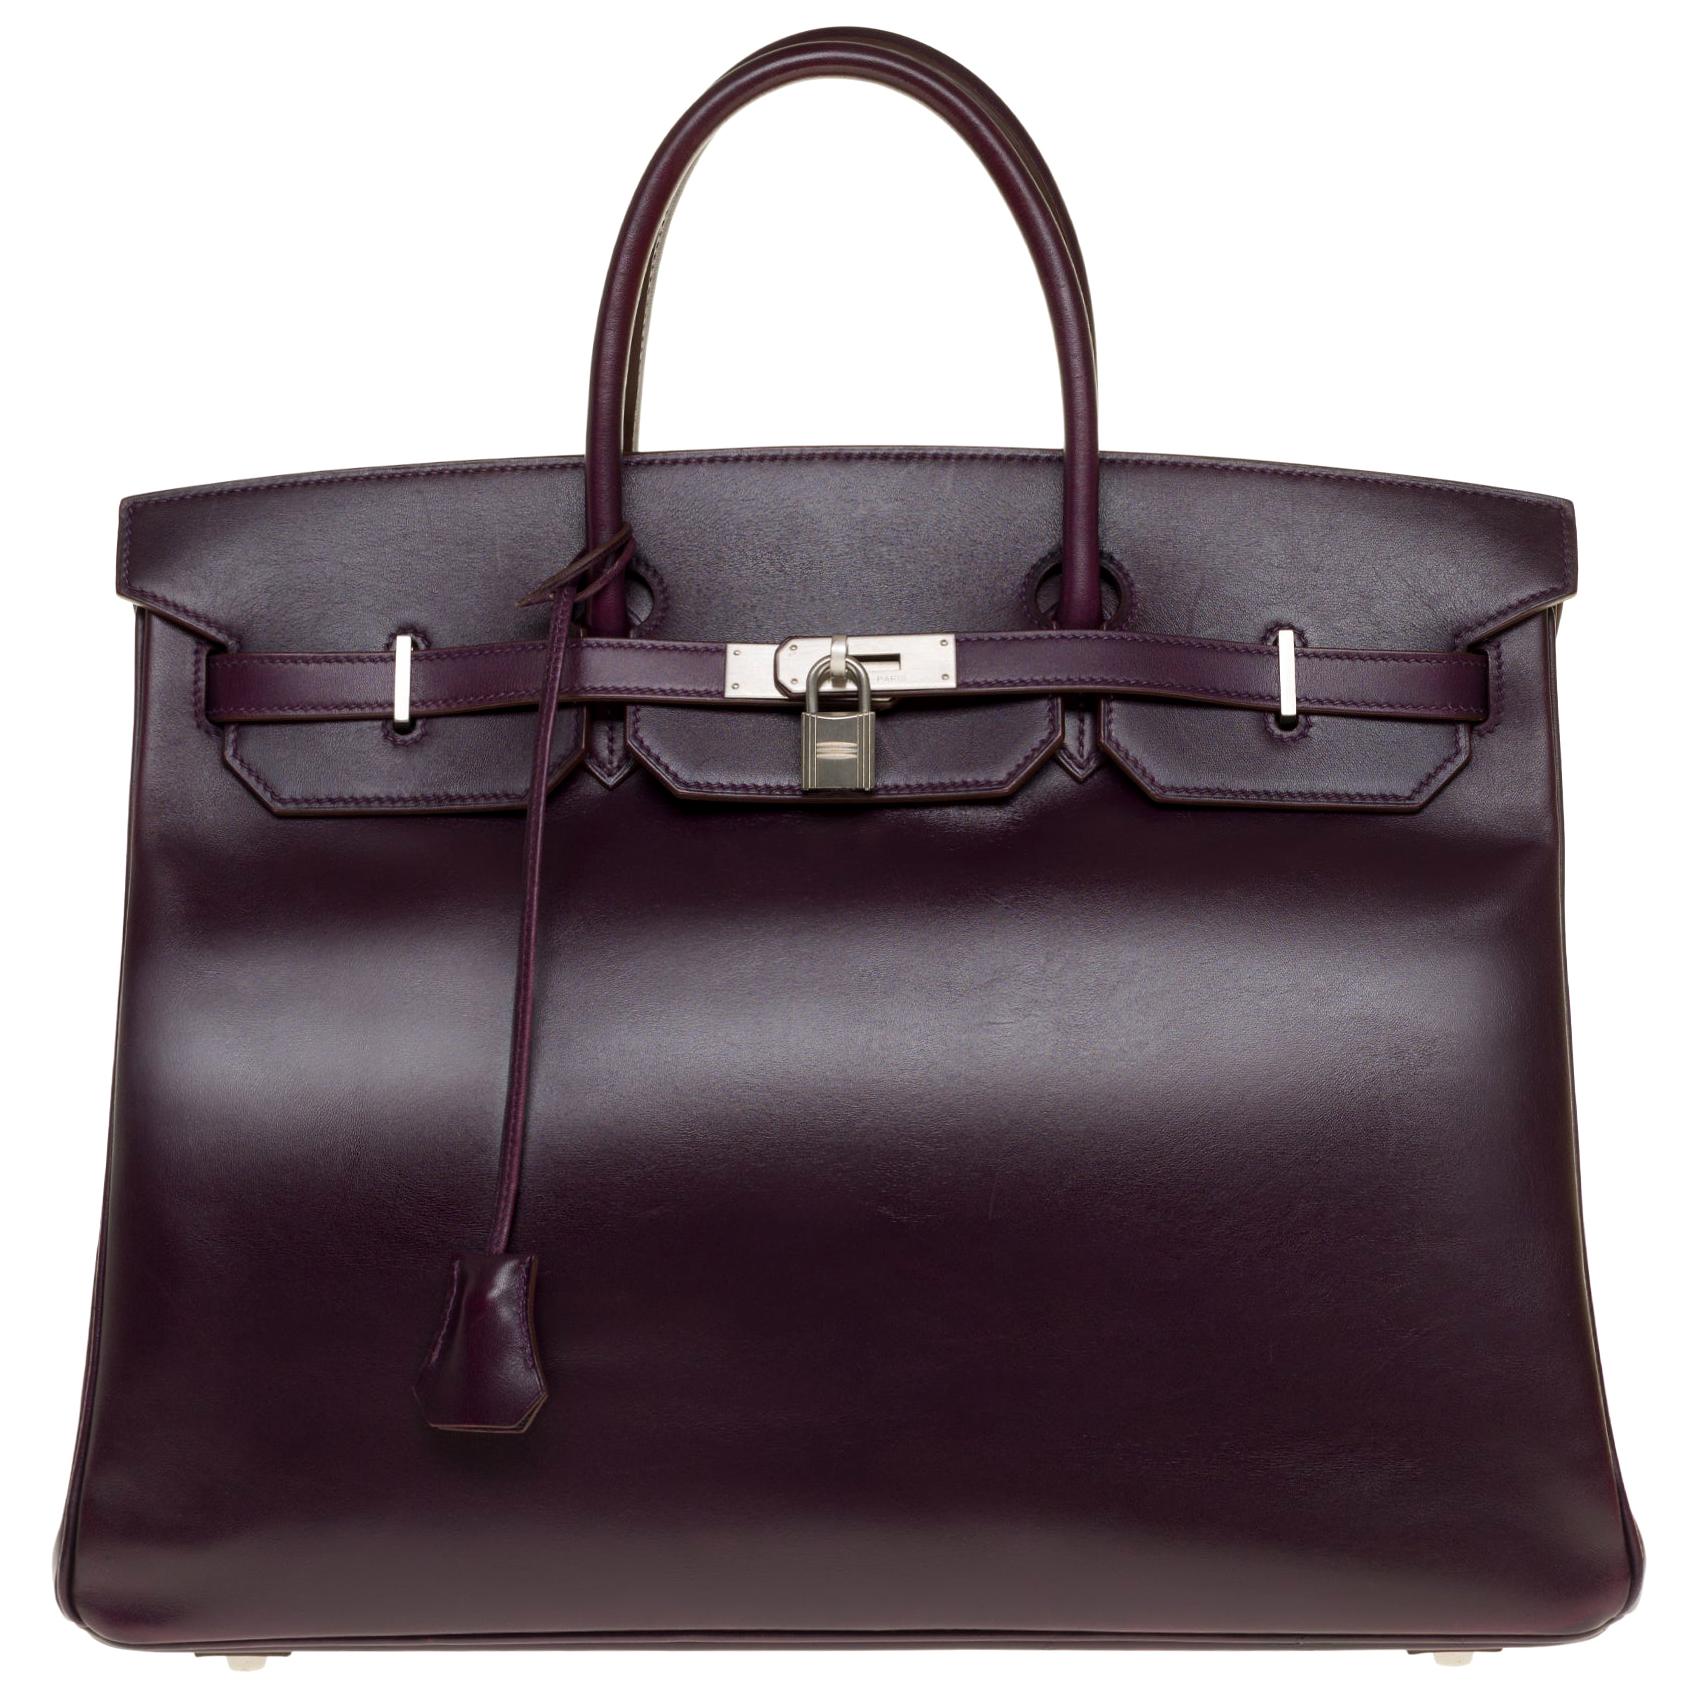 Rare Hermes Birkin 40 handbag in purple Box calfskin and brushed silver hardware